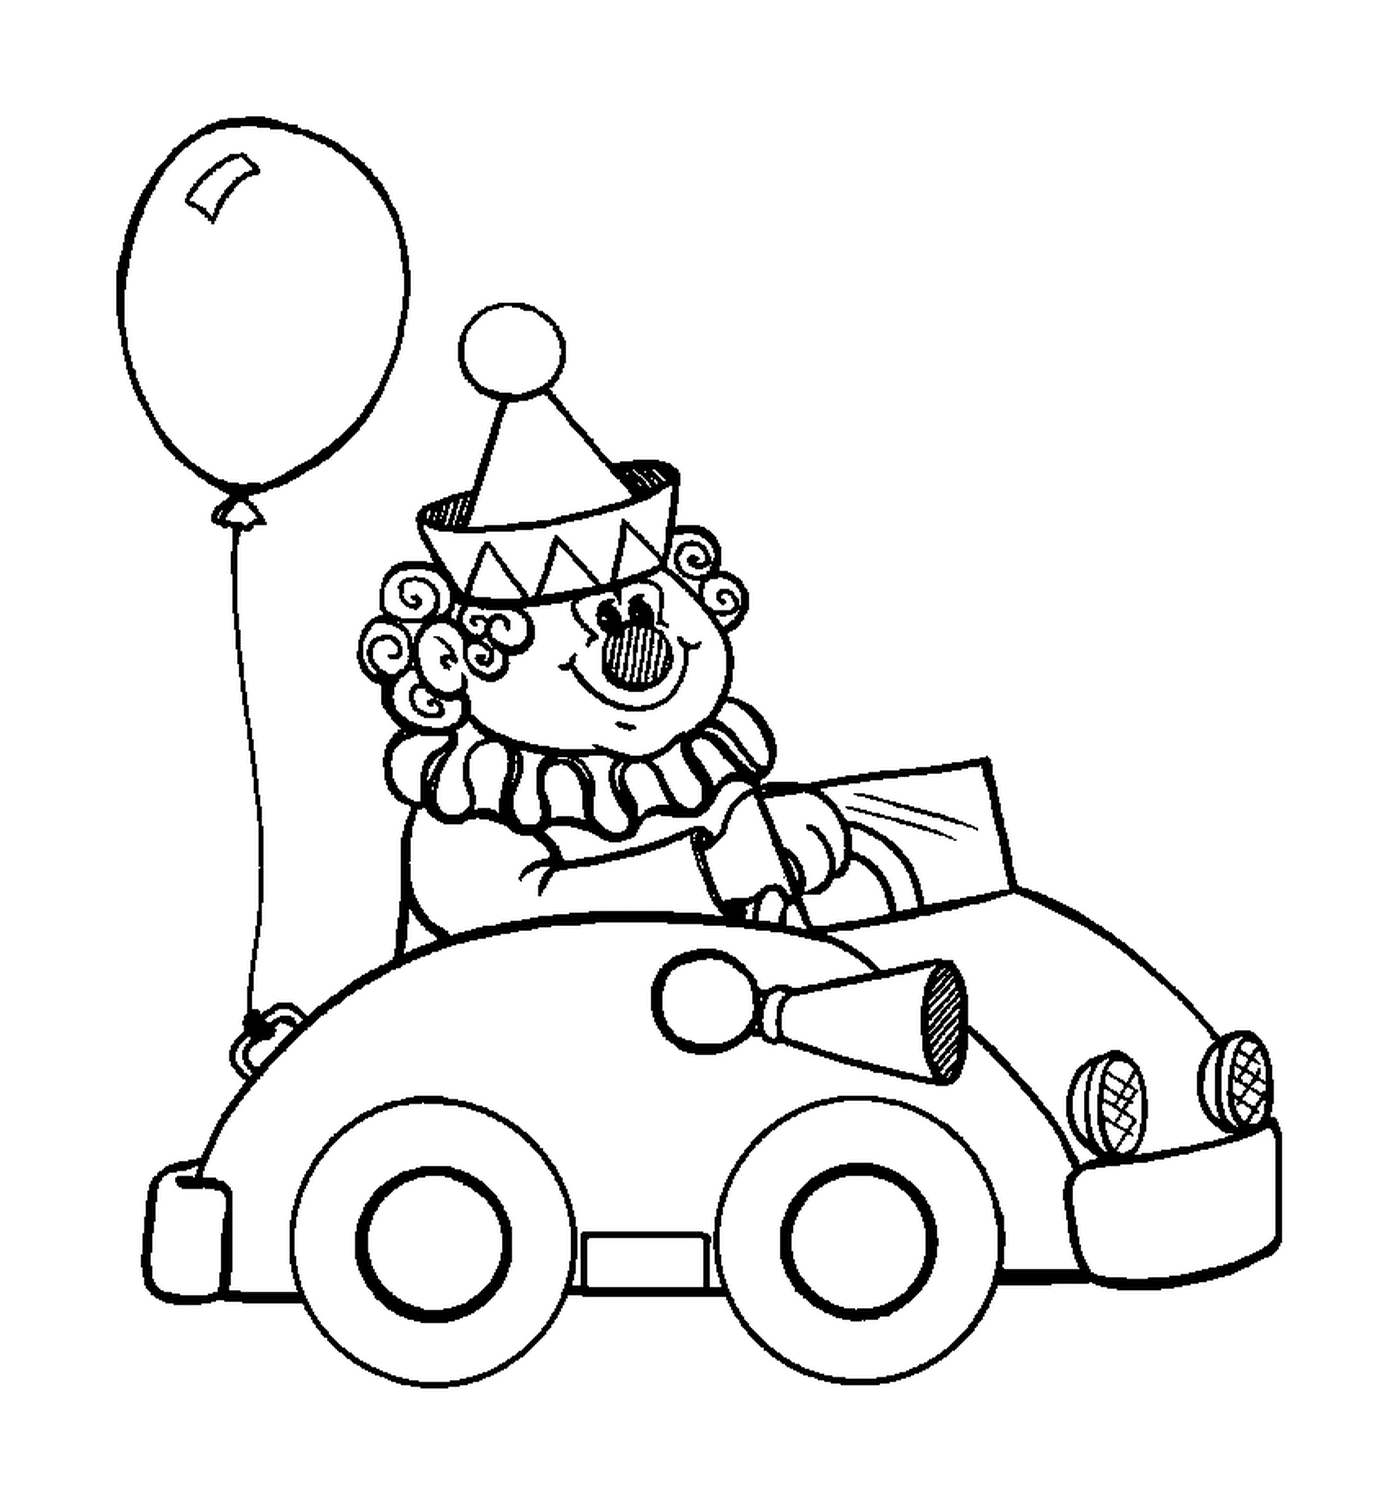  Um palhaço em um carro para o circo 